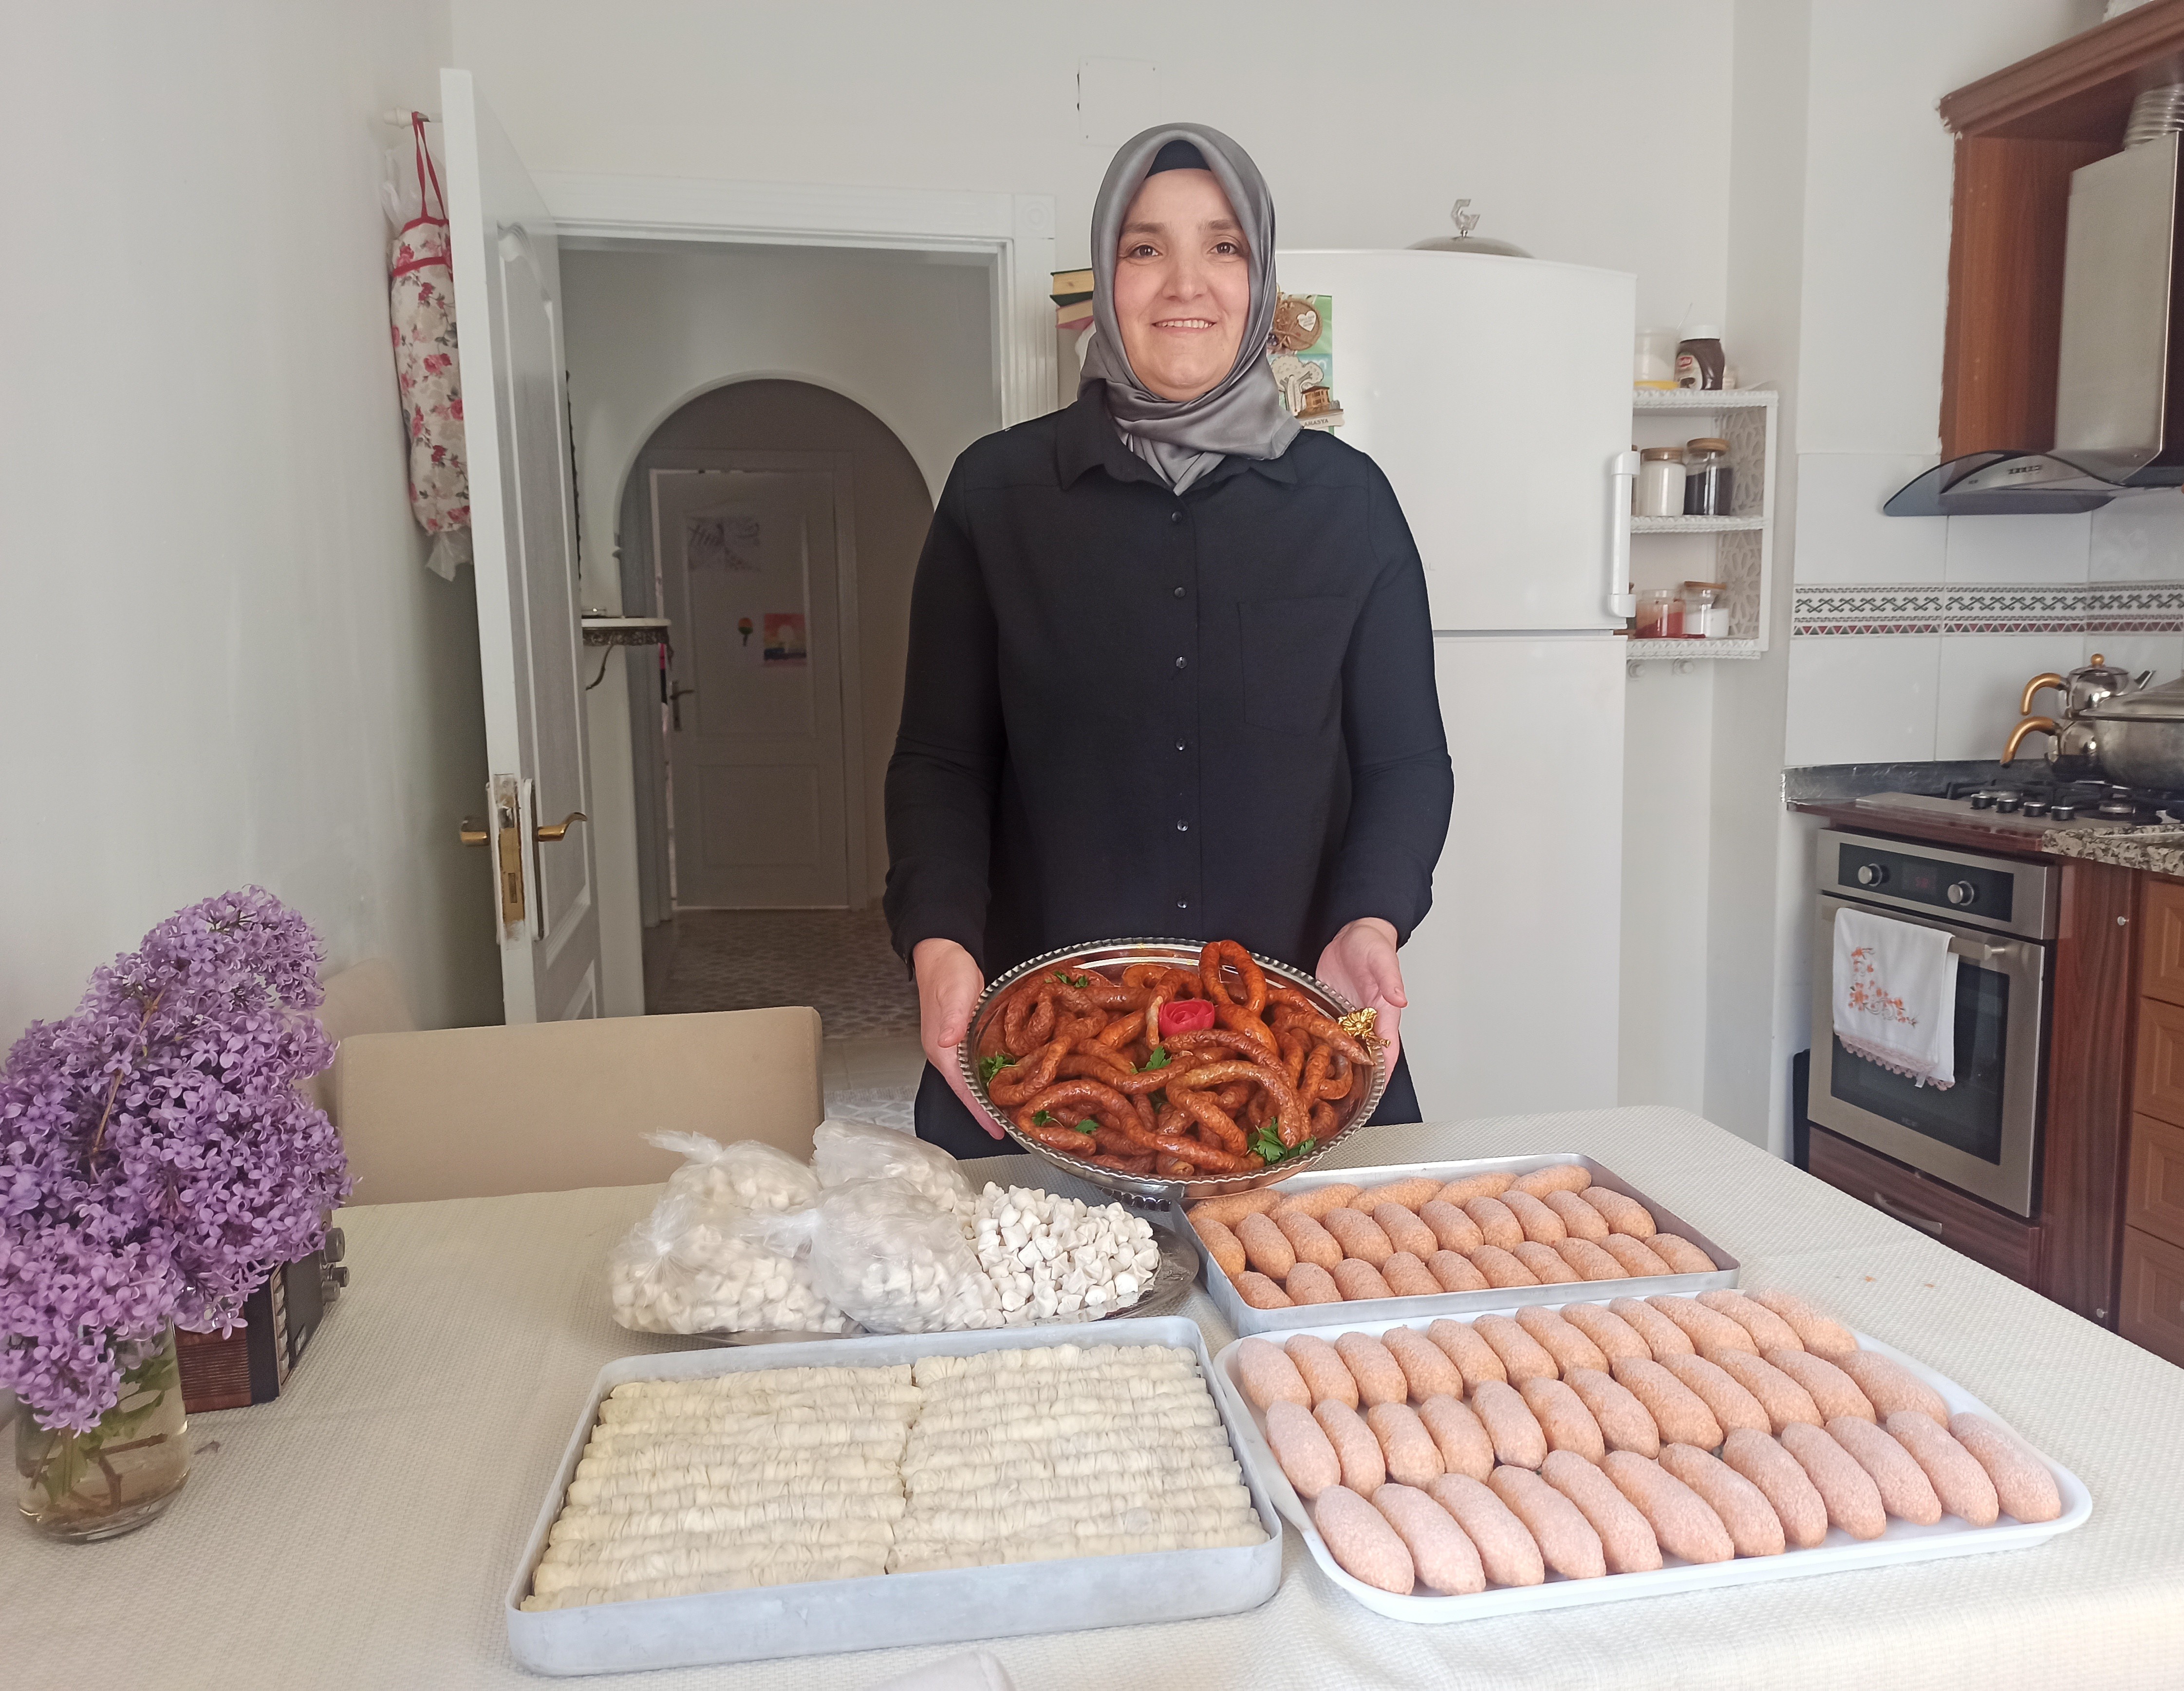 Kahramanmaraş'ta ev hanımının yöresel ev yemekleri gelir kapısı oldu